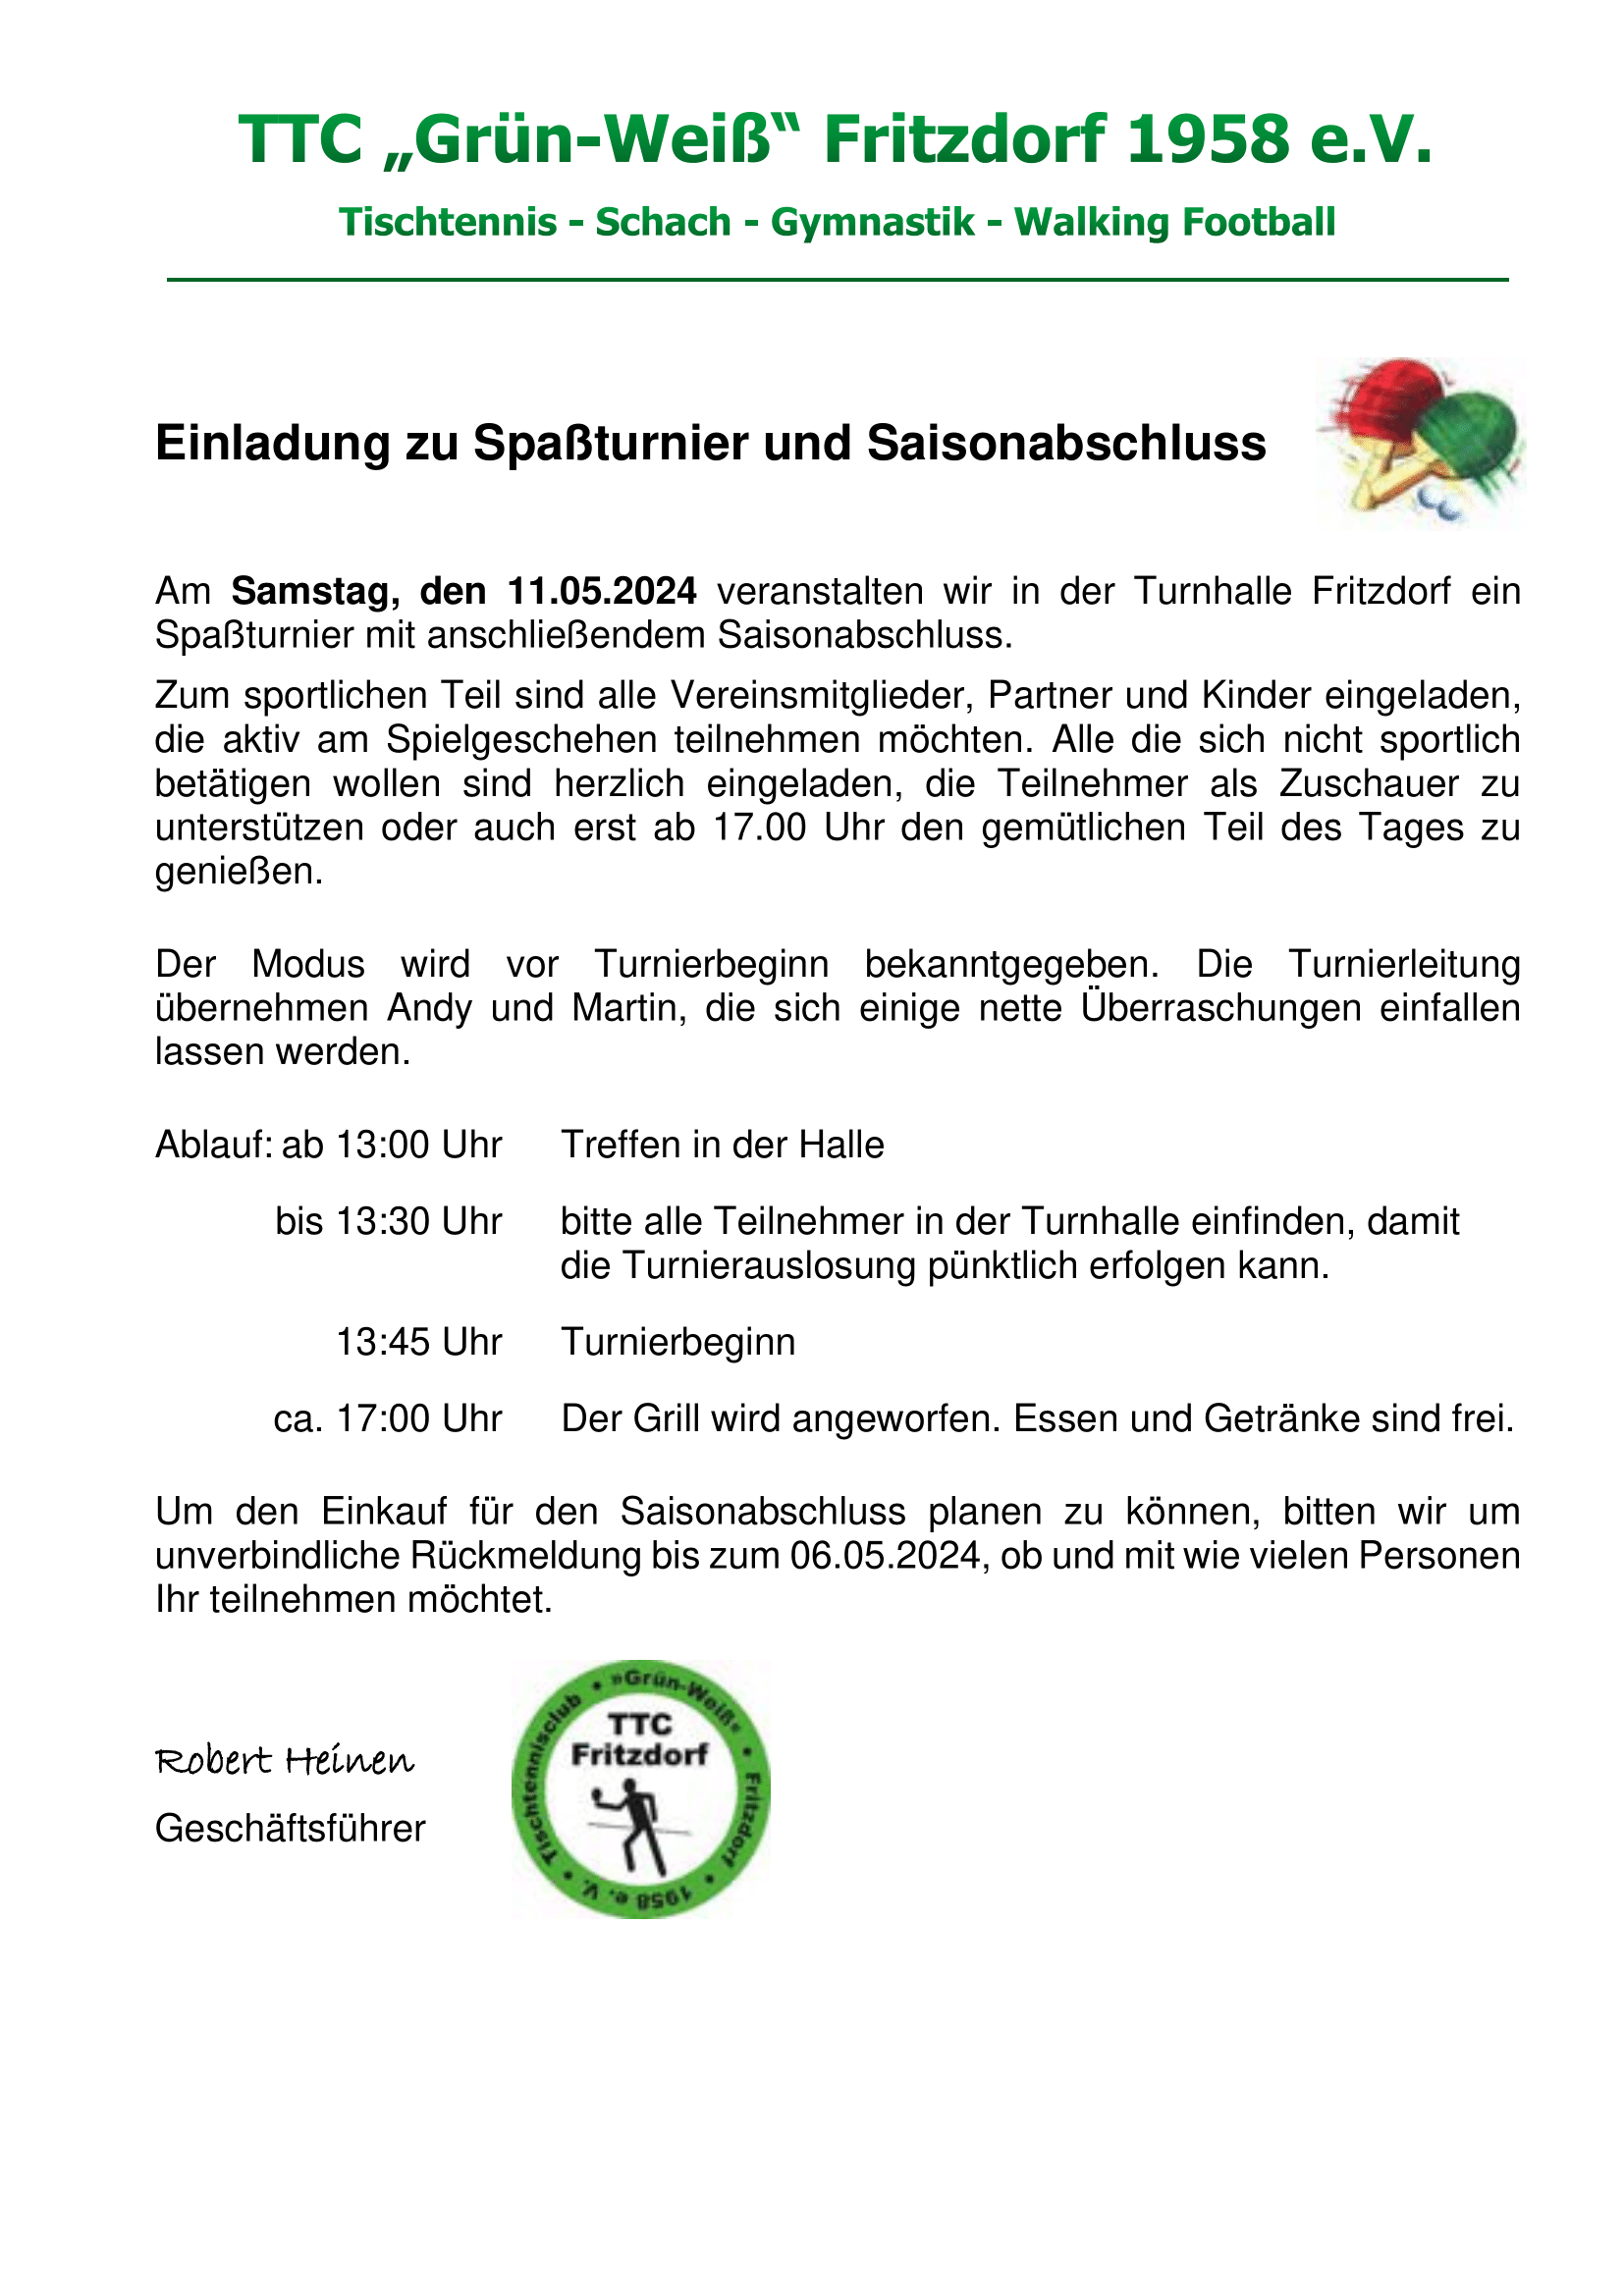 Einladung_Spaßturnier_und_Saisonabschluss_2024-komprimiert-1.png